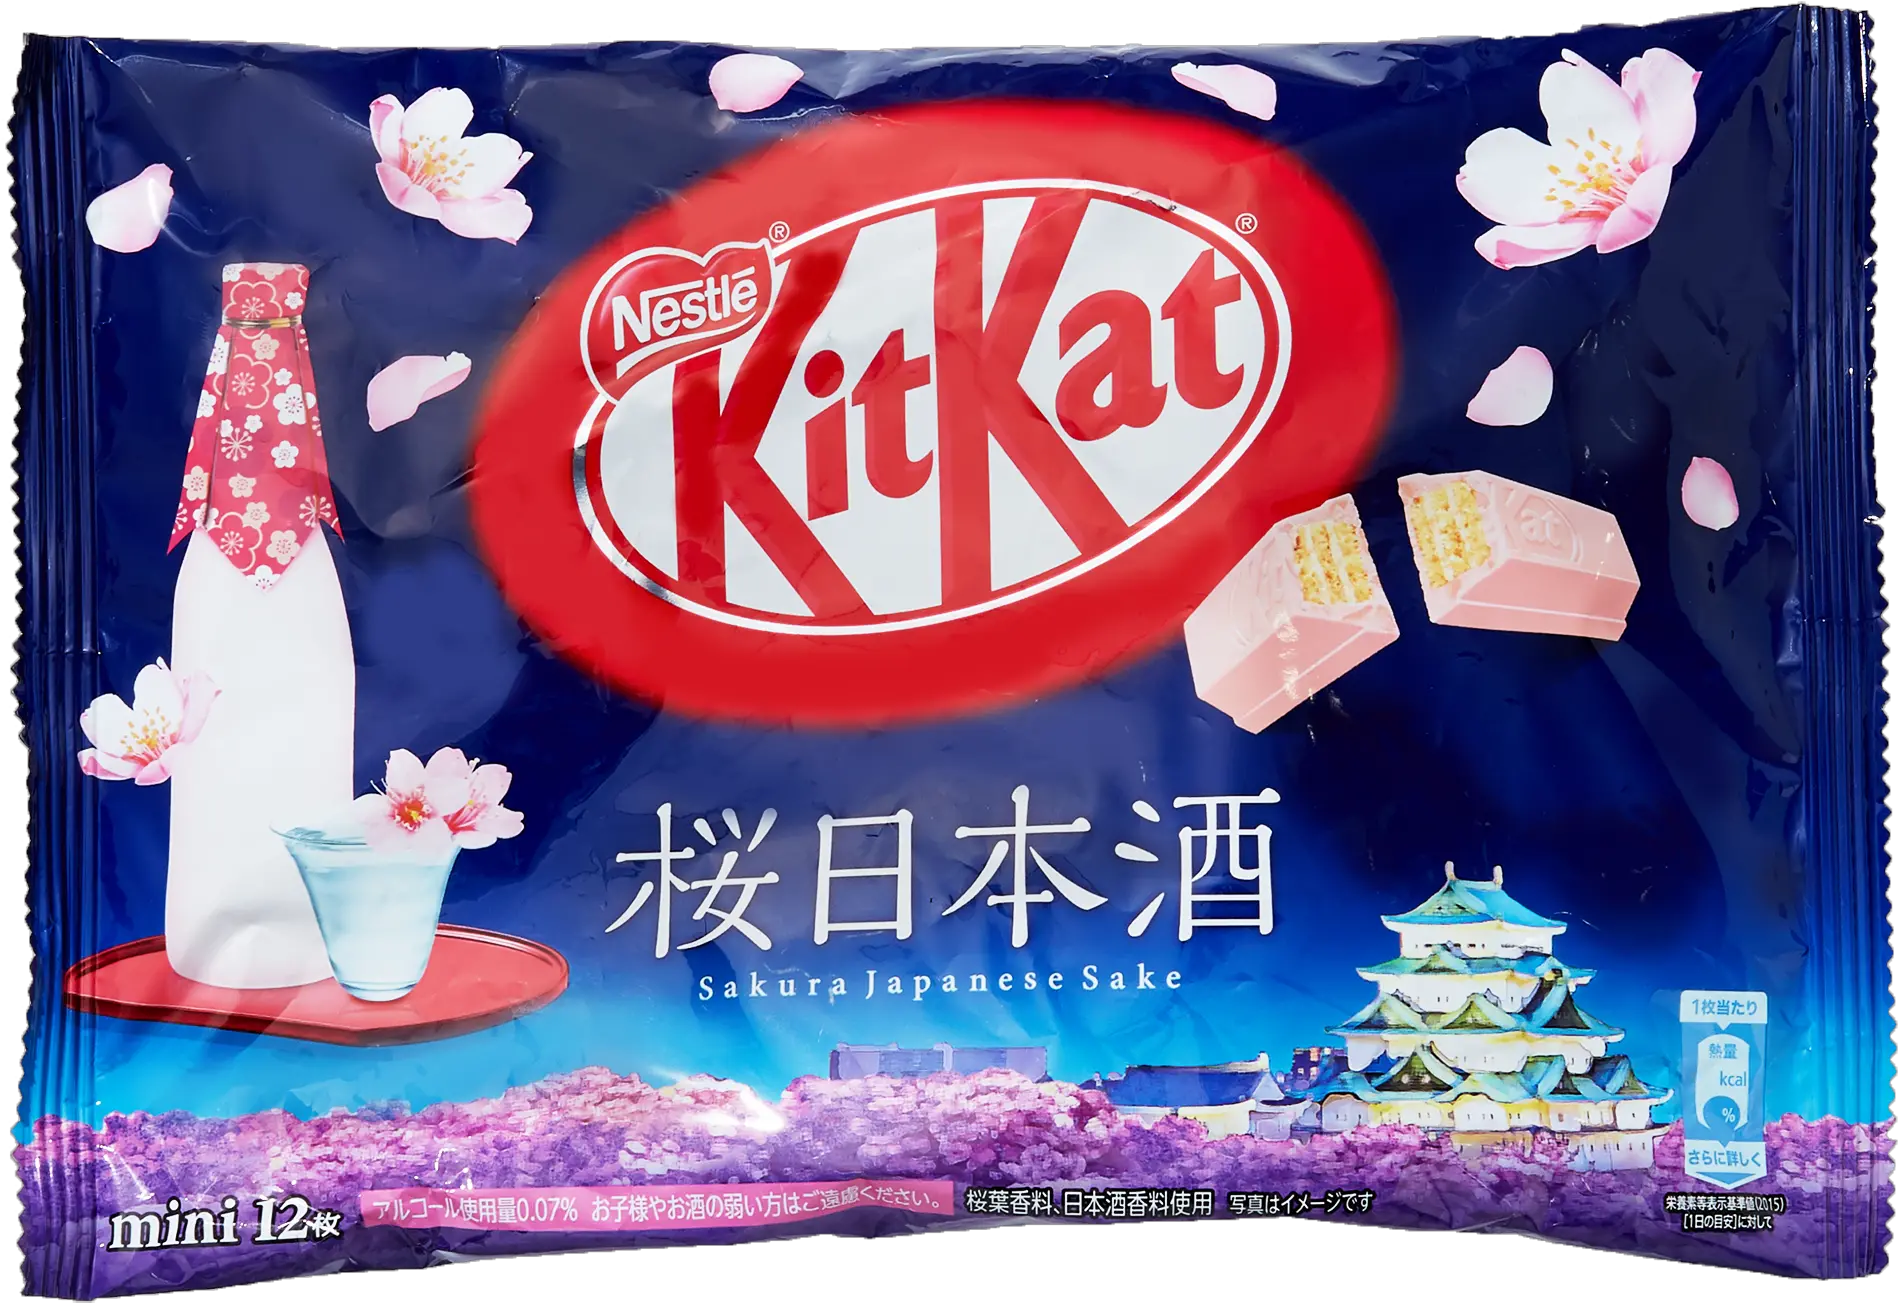 Sakura Japanese Sake Kit Kats U2013 Japan Haul Saki Kit Kat Png Kit Kat Png